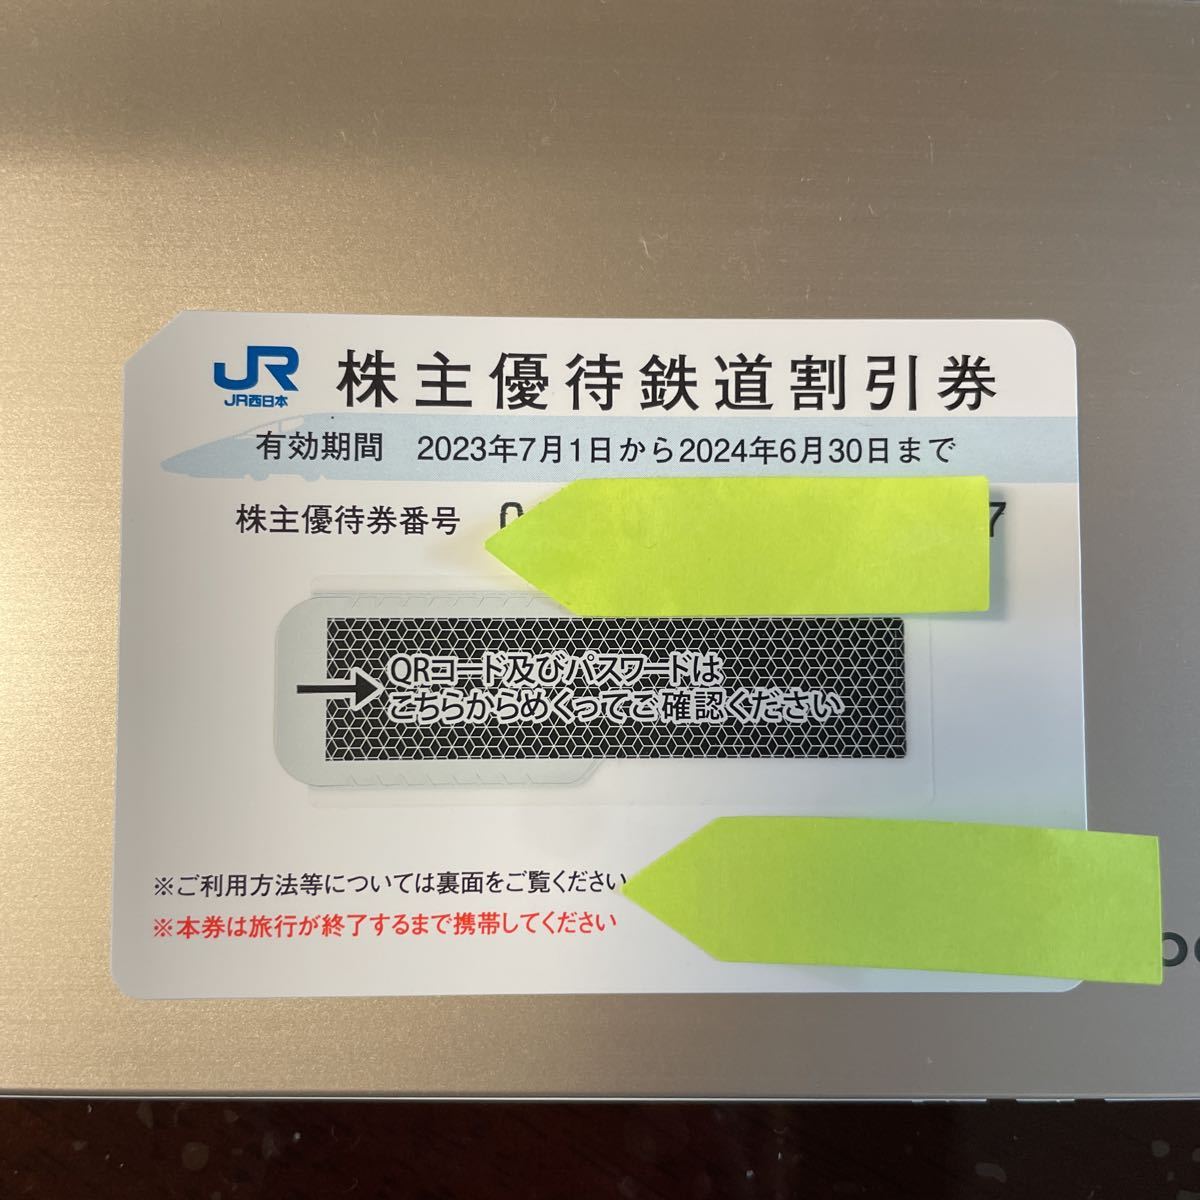 JR西日本 株主優待鉄道割引券 2枚 番号通知のみ 有効期間 2024年6月30